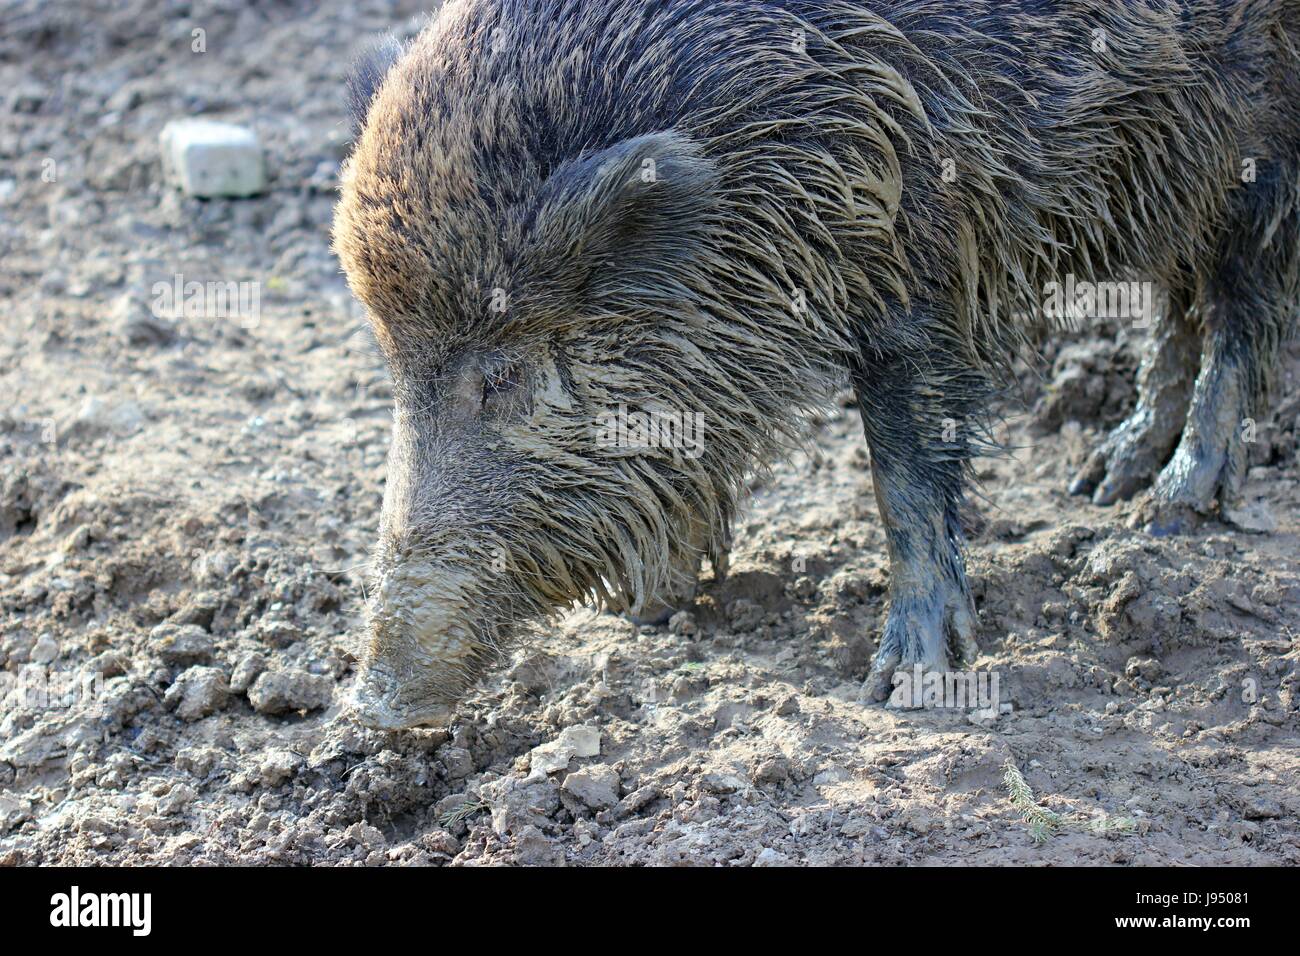 boar in tierpark sababurg Stock Photo